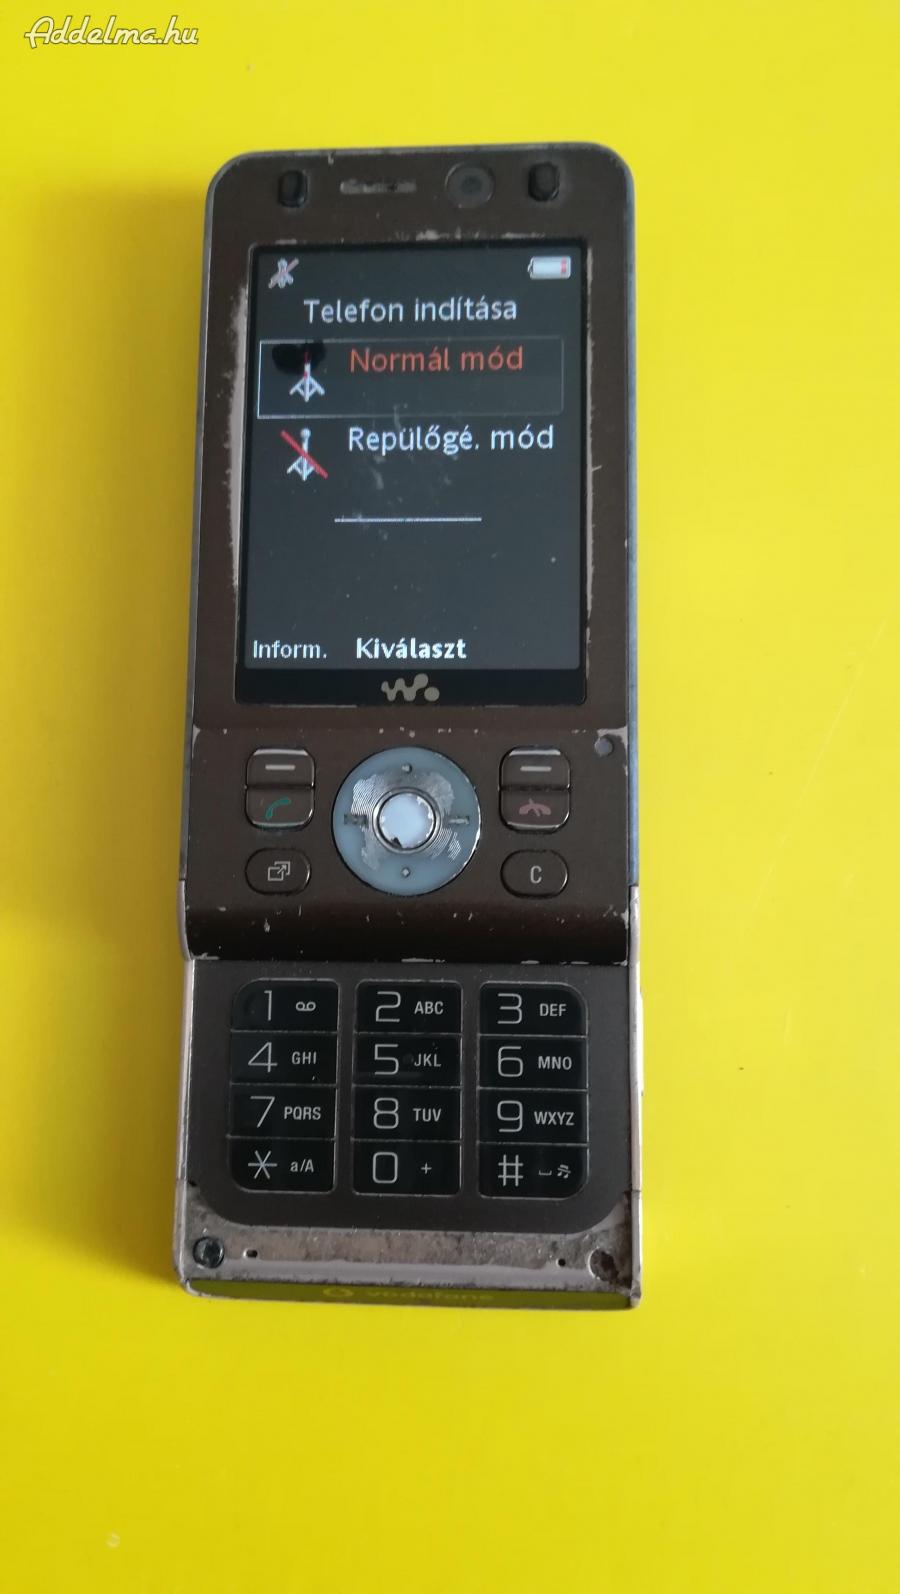 Sony-Ericcson   W910i mobil töltést nem veszi, bekapcsol 